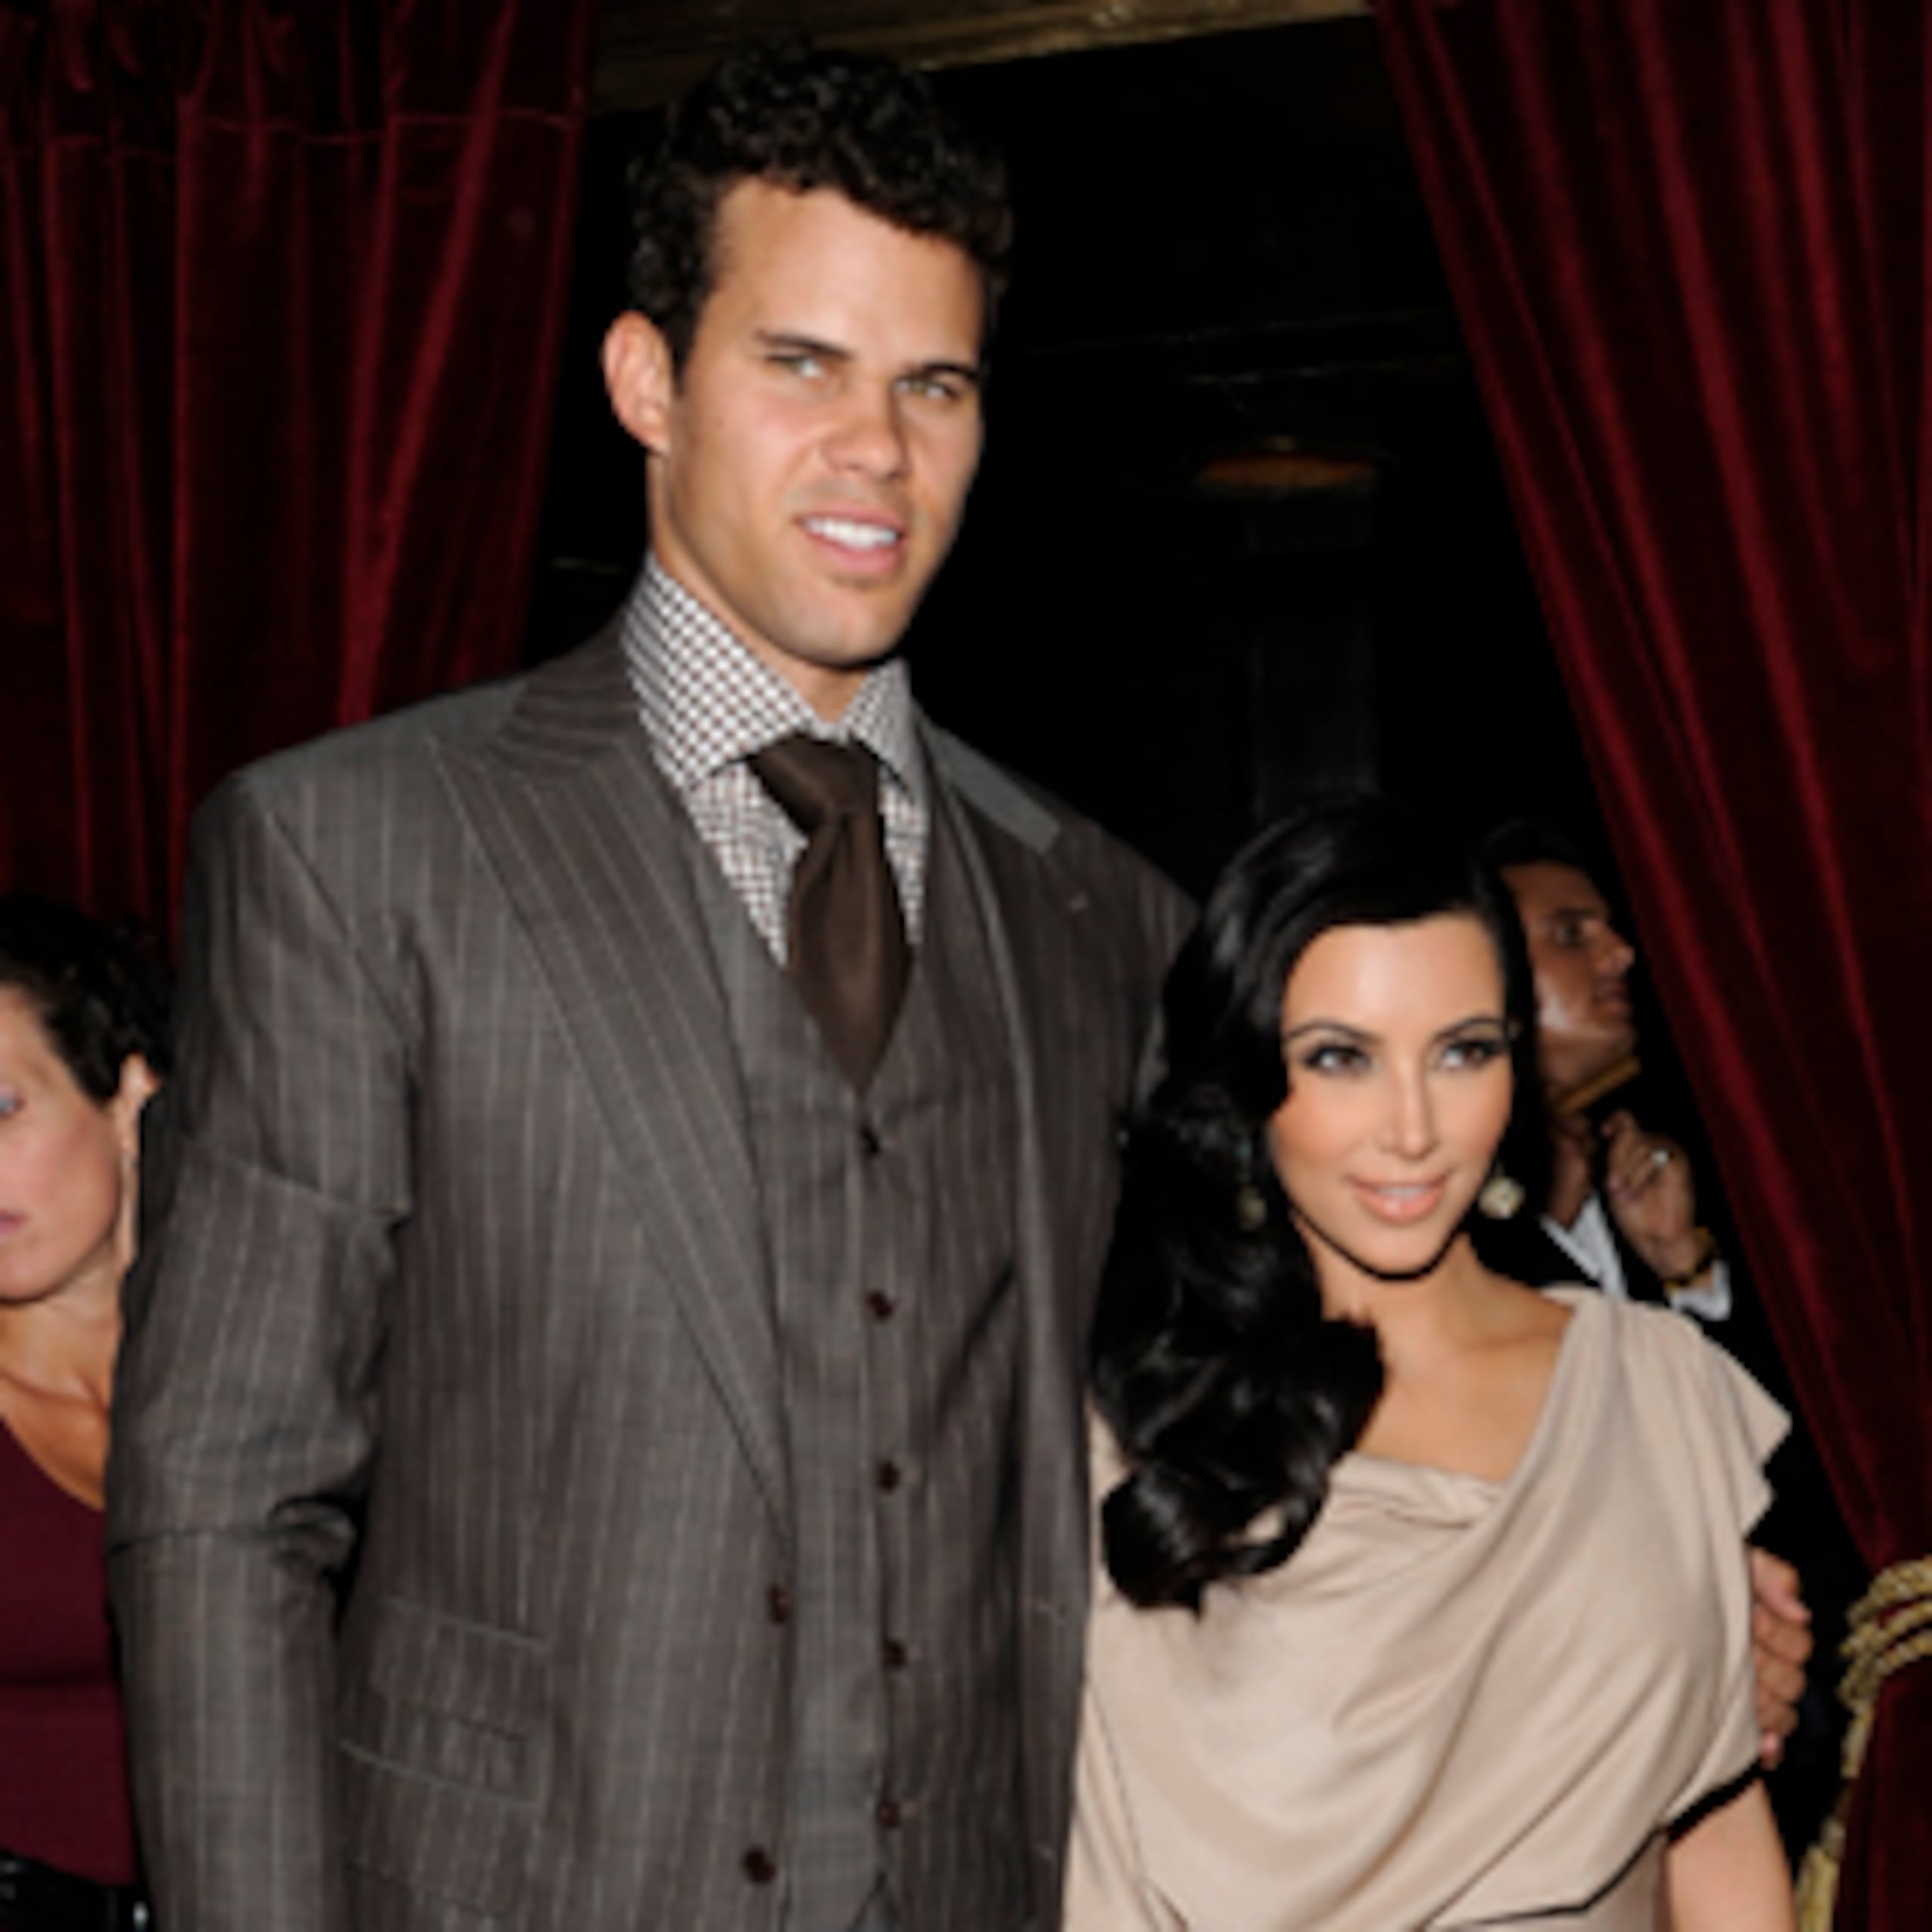 Kardashian presentó su solicitud de divorcio el 21 de octubre del 2011, luego de 72 días de casada con Humphries. (Archivo)